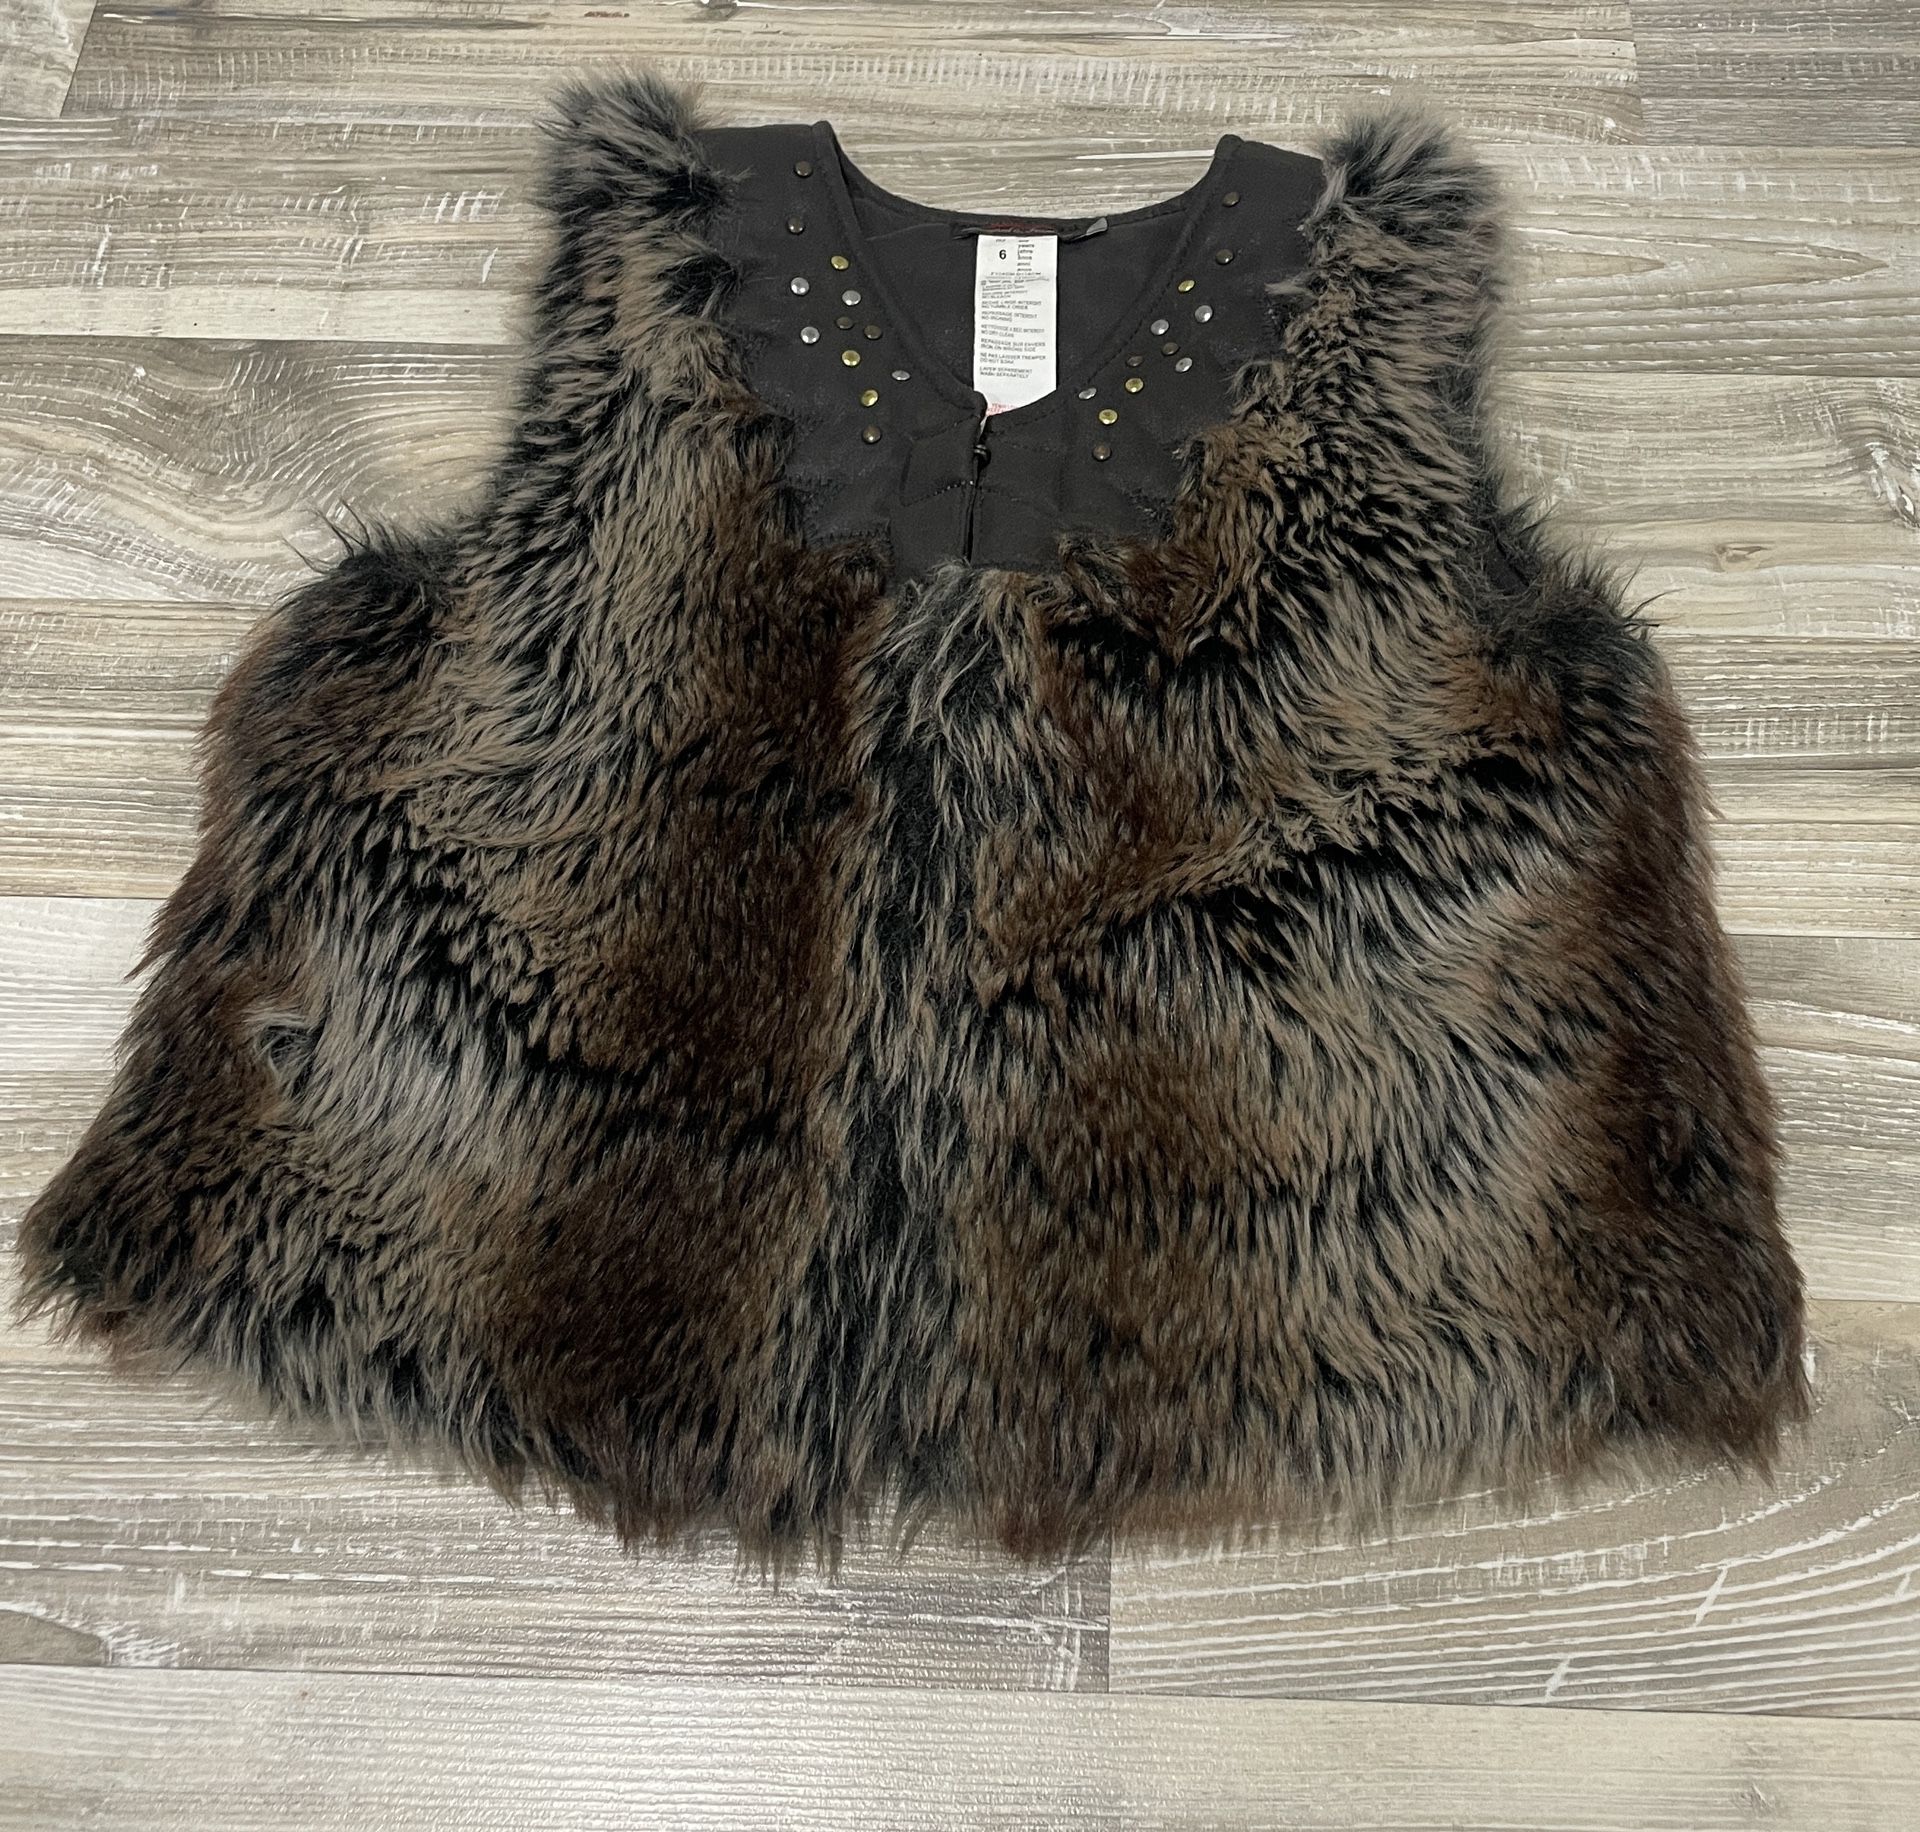 Catamini Girls Faux Fur Brown Vest Size 6 Hookeye Winter 